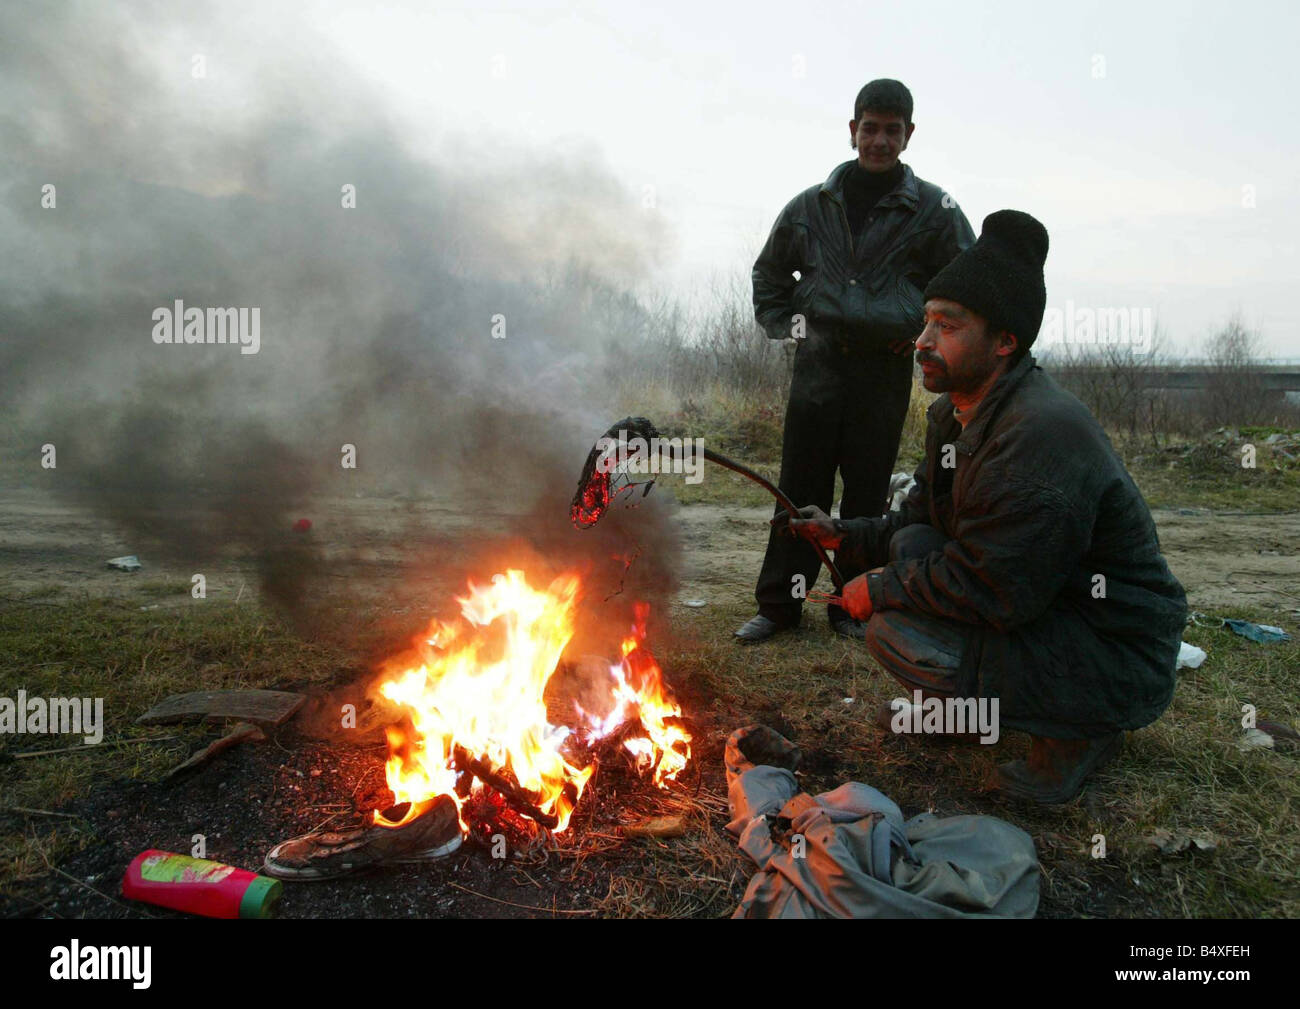 Copsa Mica de noviembre de 2006, Rumania extractora de cobre Ioan Lazer 42 quemar el plástico del cable de cobre para vender por 2 euros por kilo en la ciudad de Copsa Mica Foto de stock